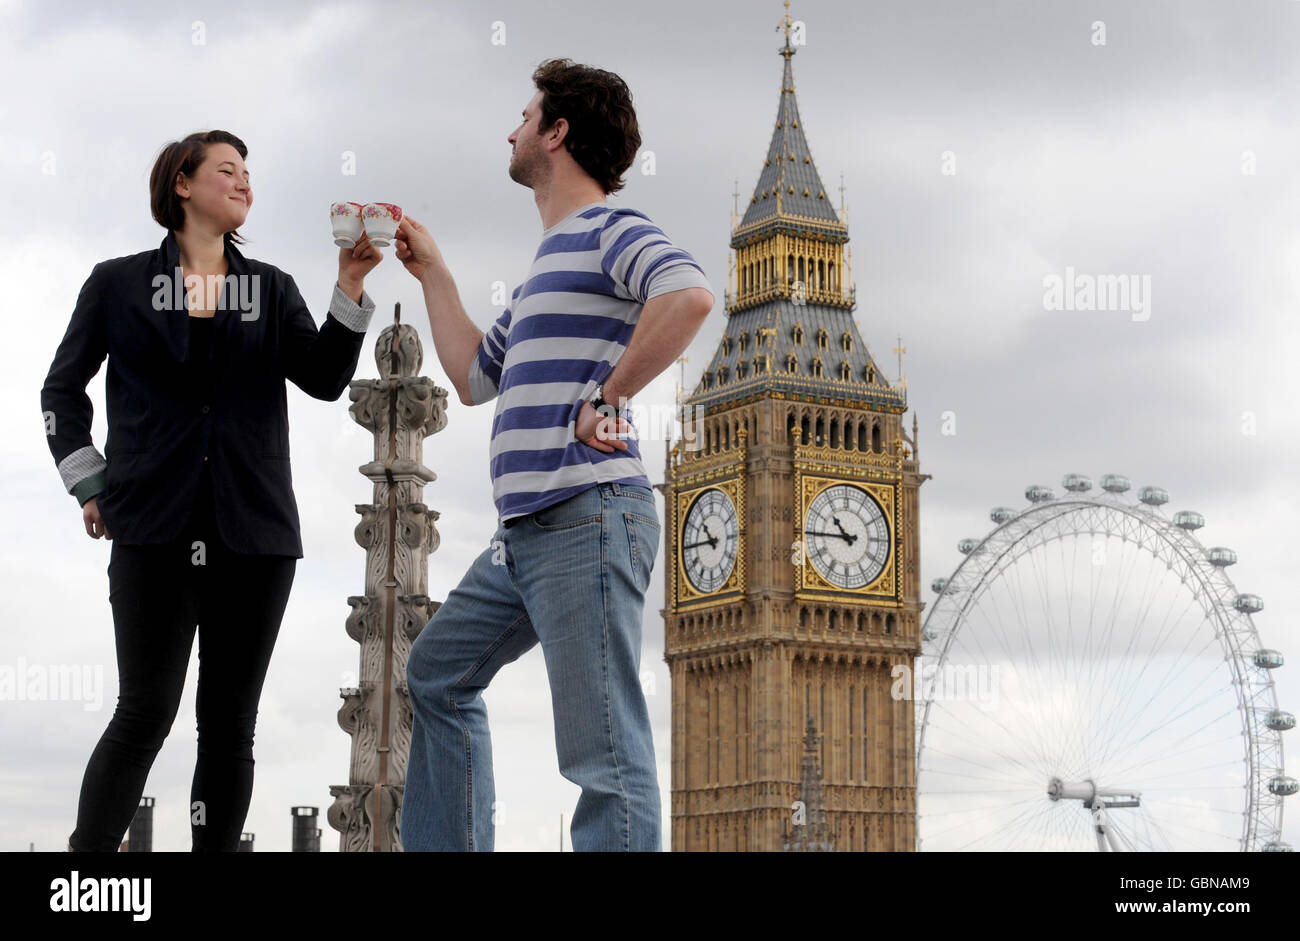 Alexa Mardon (links) und Sean McConaghy genießen Tee auf dem Dach der Westminster Abbey während einer Fotoaktion, die von Visit London in Auftrag gegeben wurde, für die Tourismuskampagne "Only in London". Stockfoto